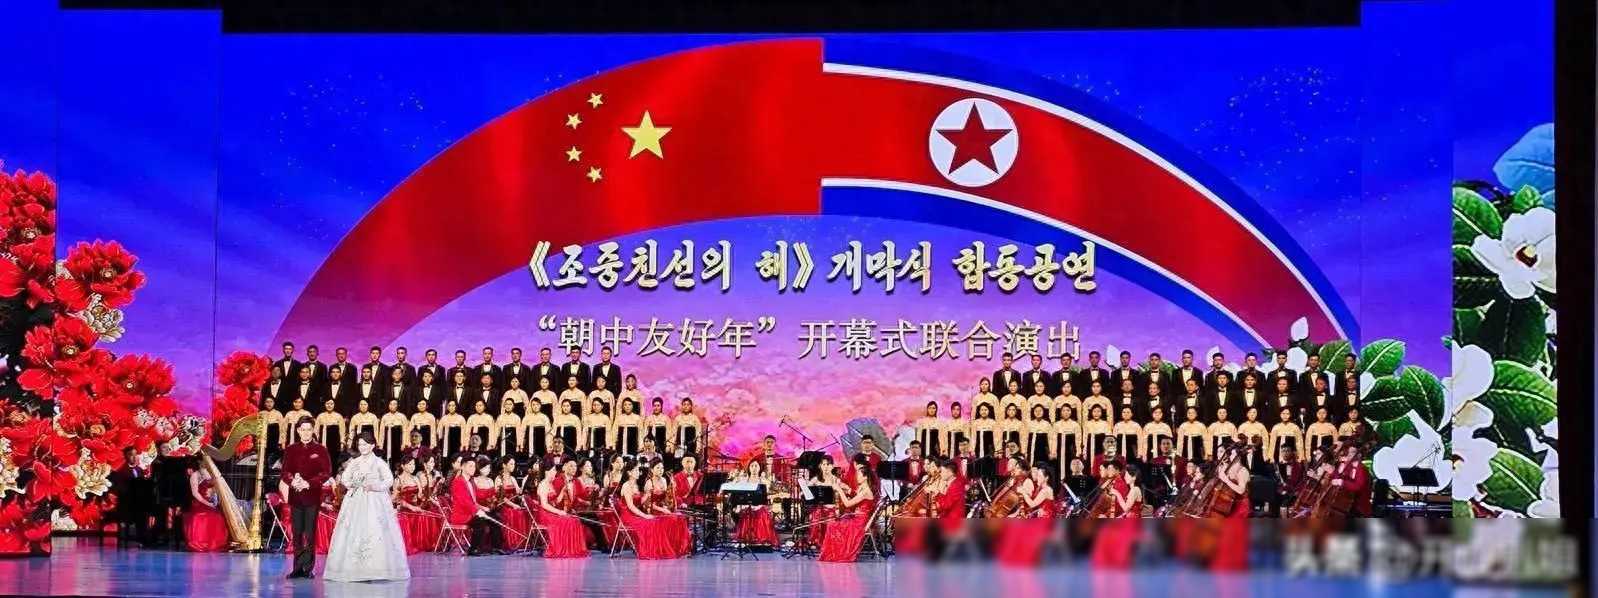 朝鲜新闻联播搞笑图片